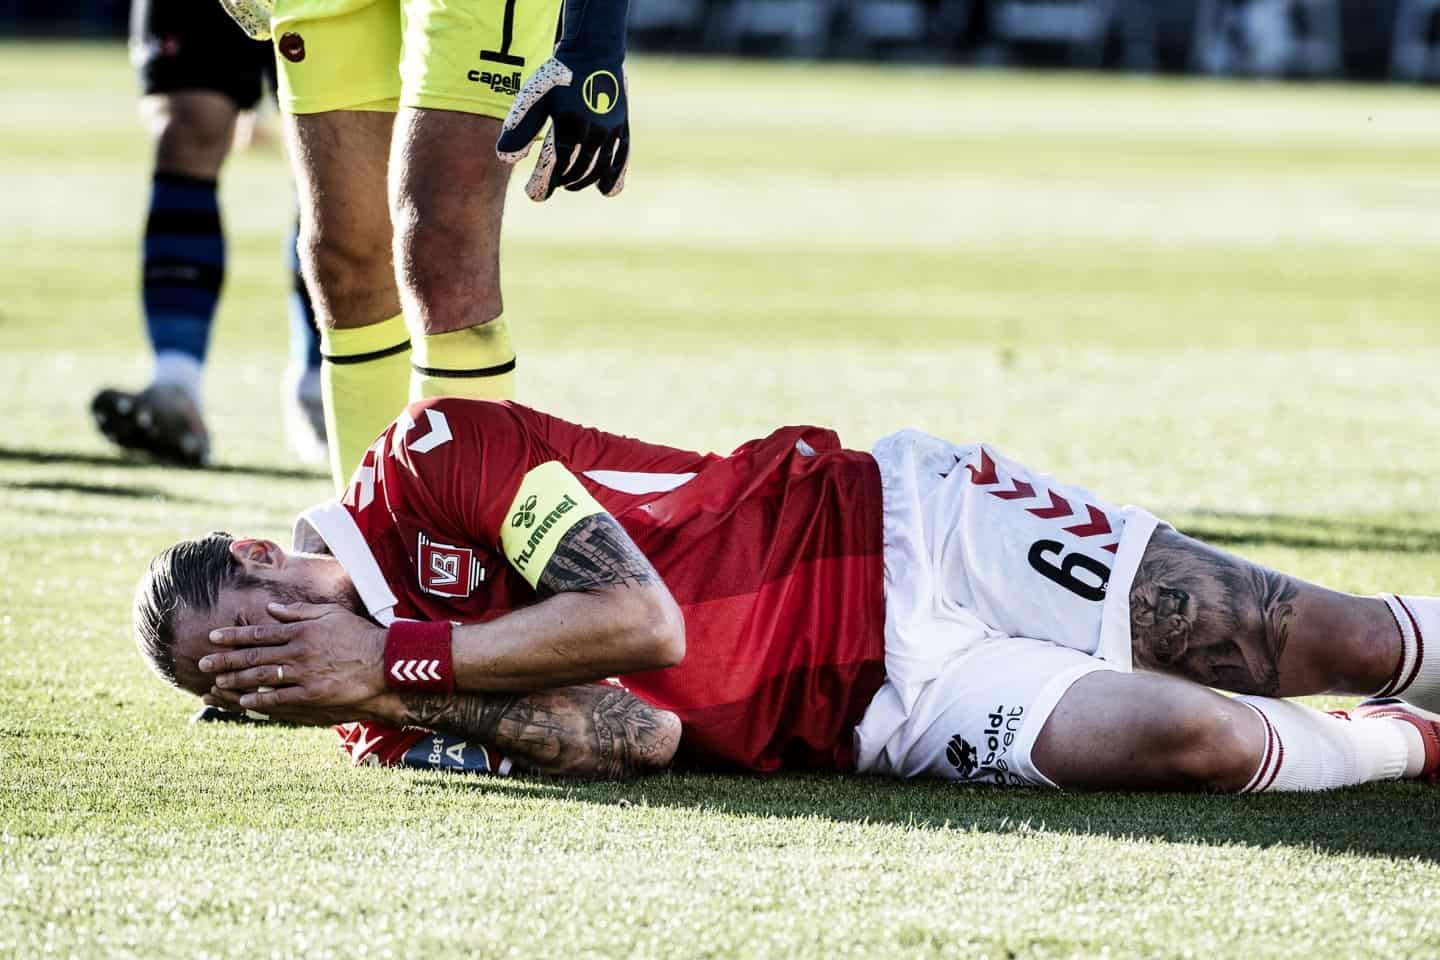 brækkede tå gør fortsat ondt: Raul Albentosa besluttet sig i forhold til kamp mod Hobro | vafo.dk